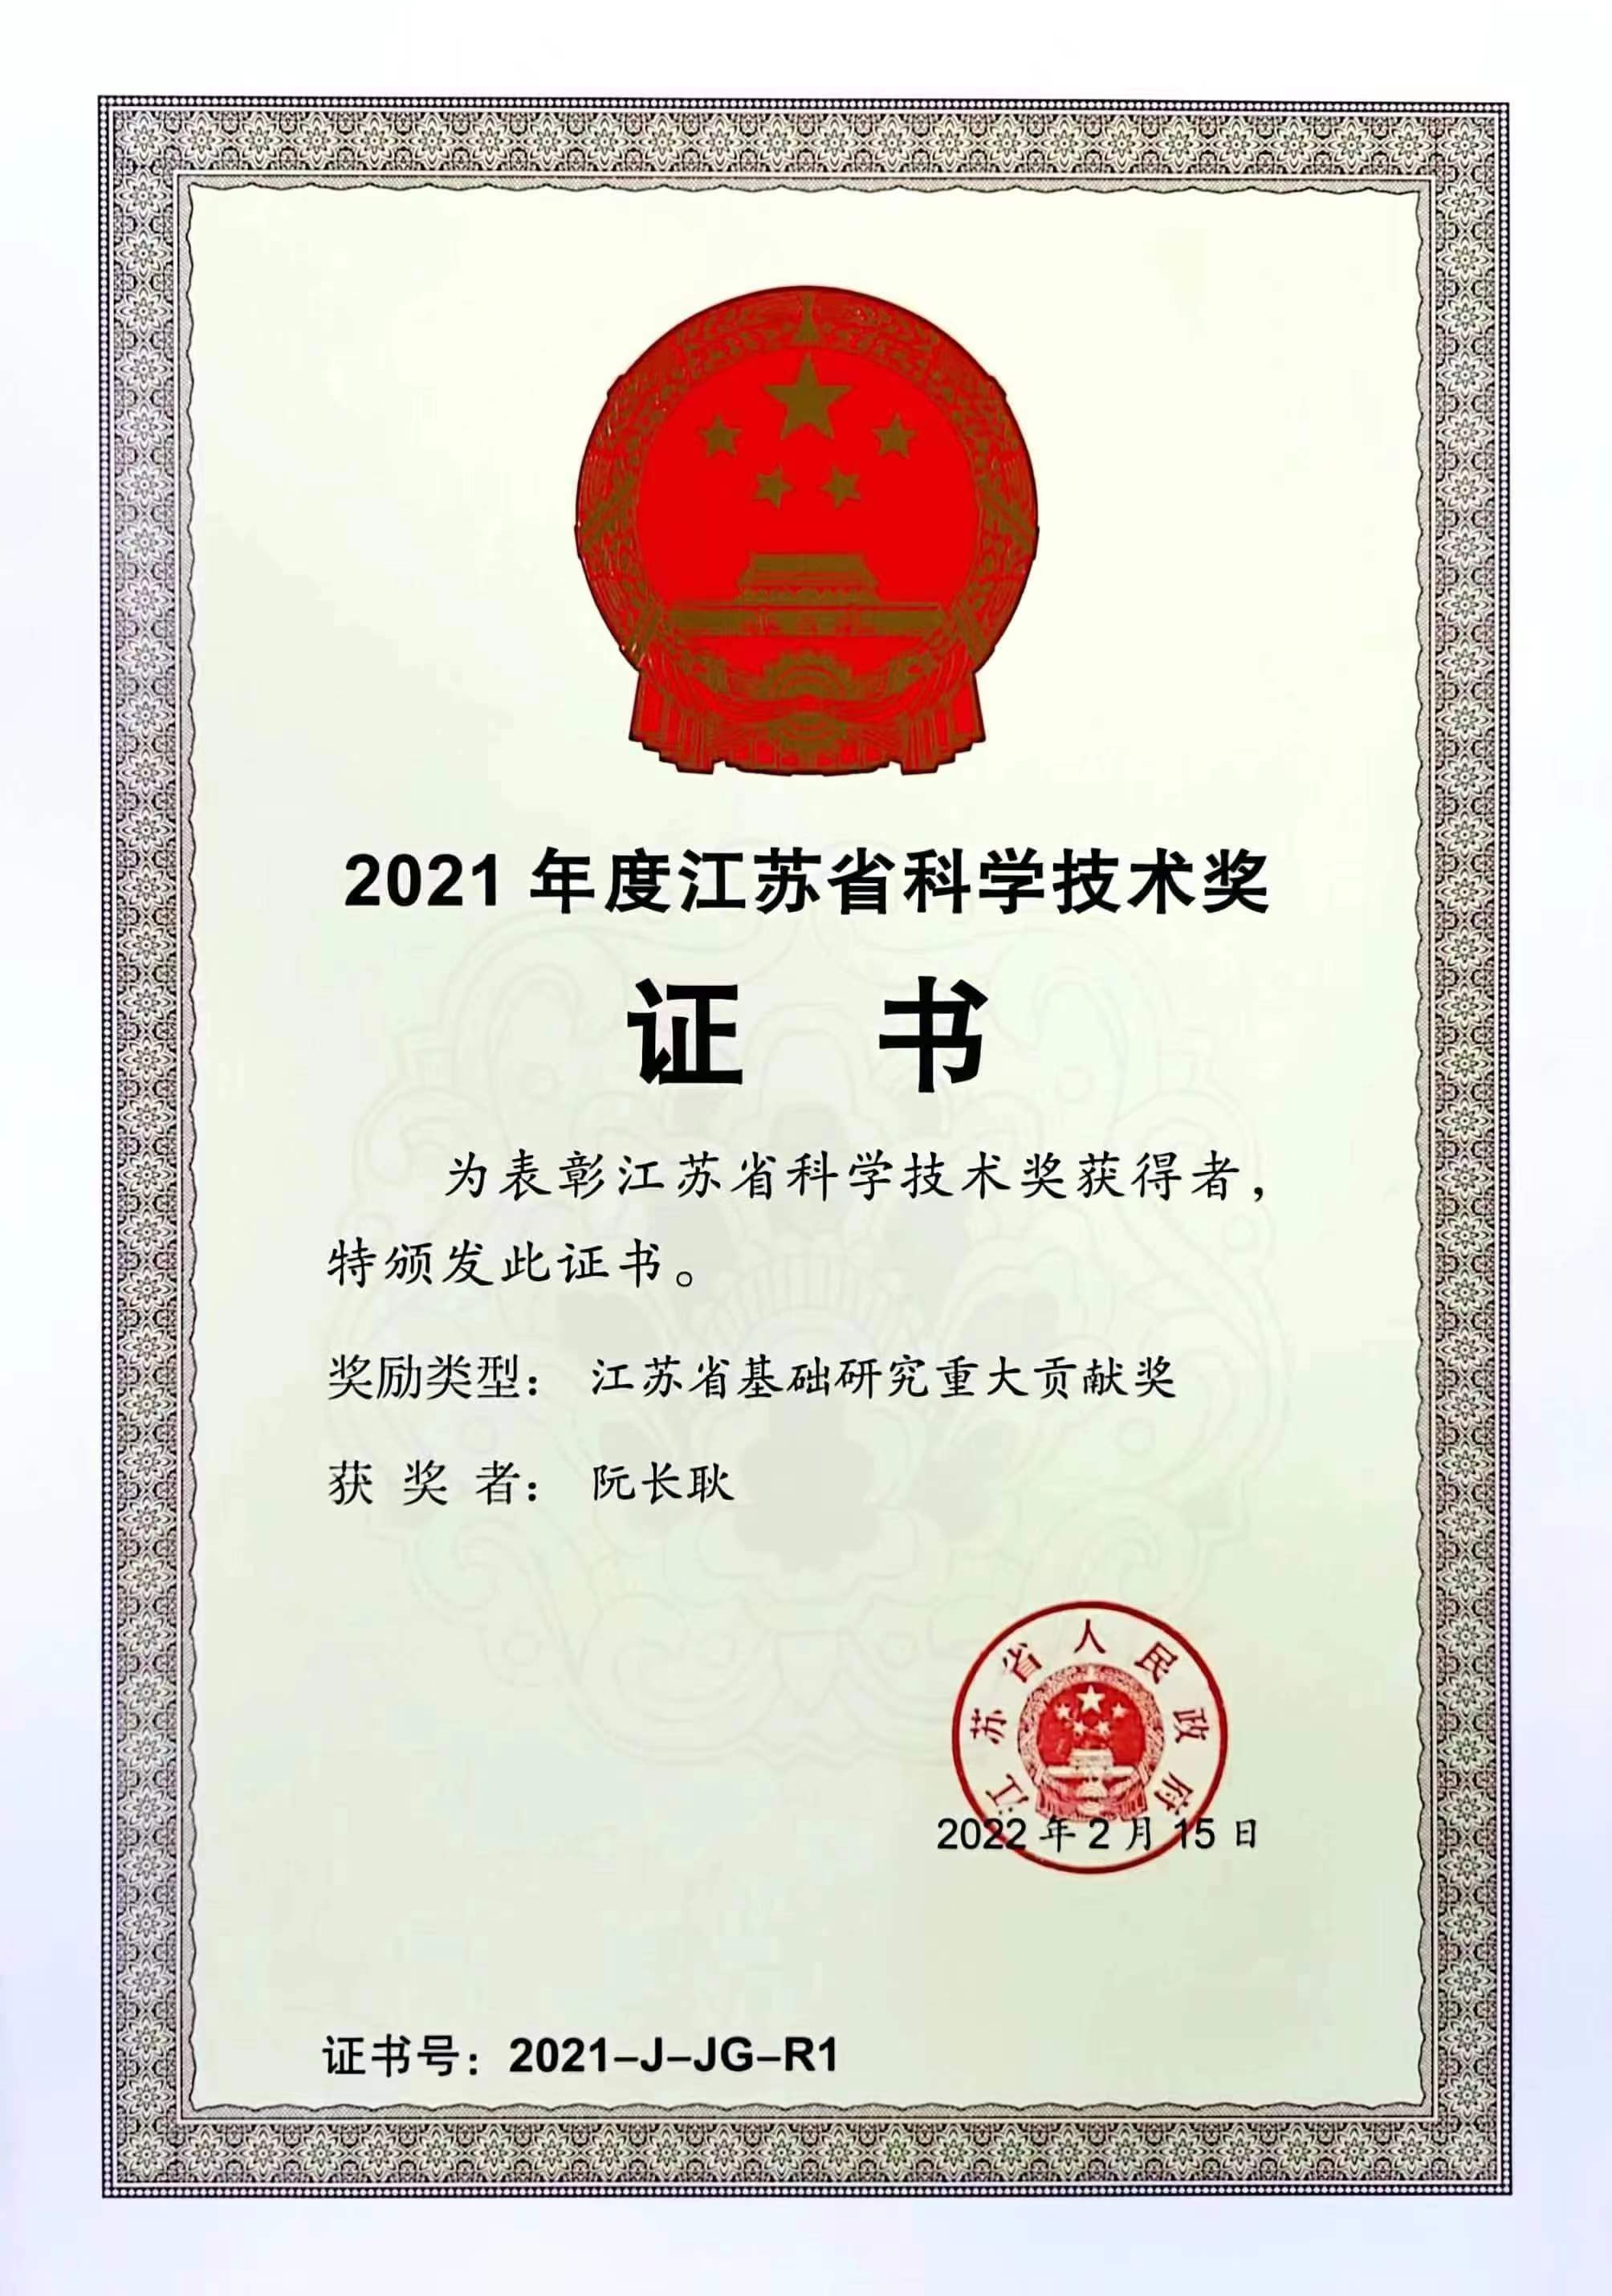 阮长耿院士荣获江苏唯一基础研究重大贡献奖  苏州大学26项成果在全省科学技术奖励大会上受表彰